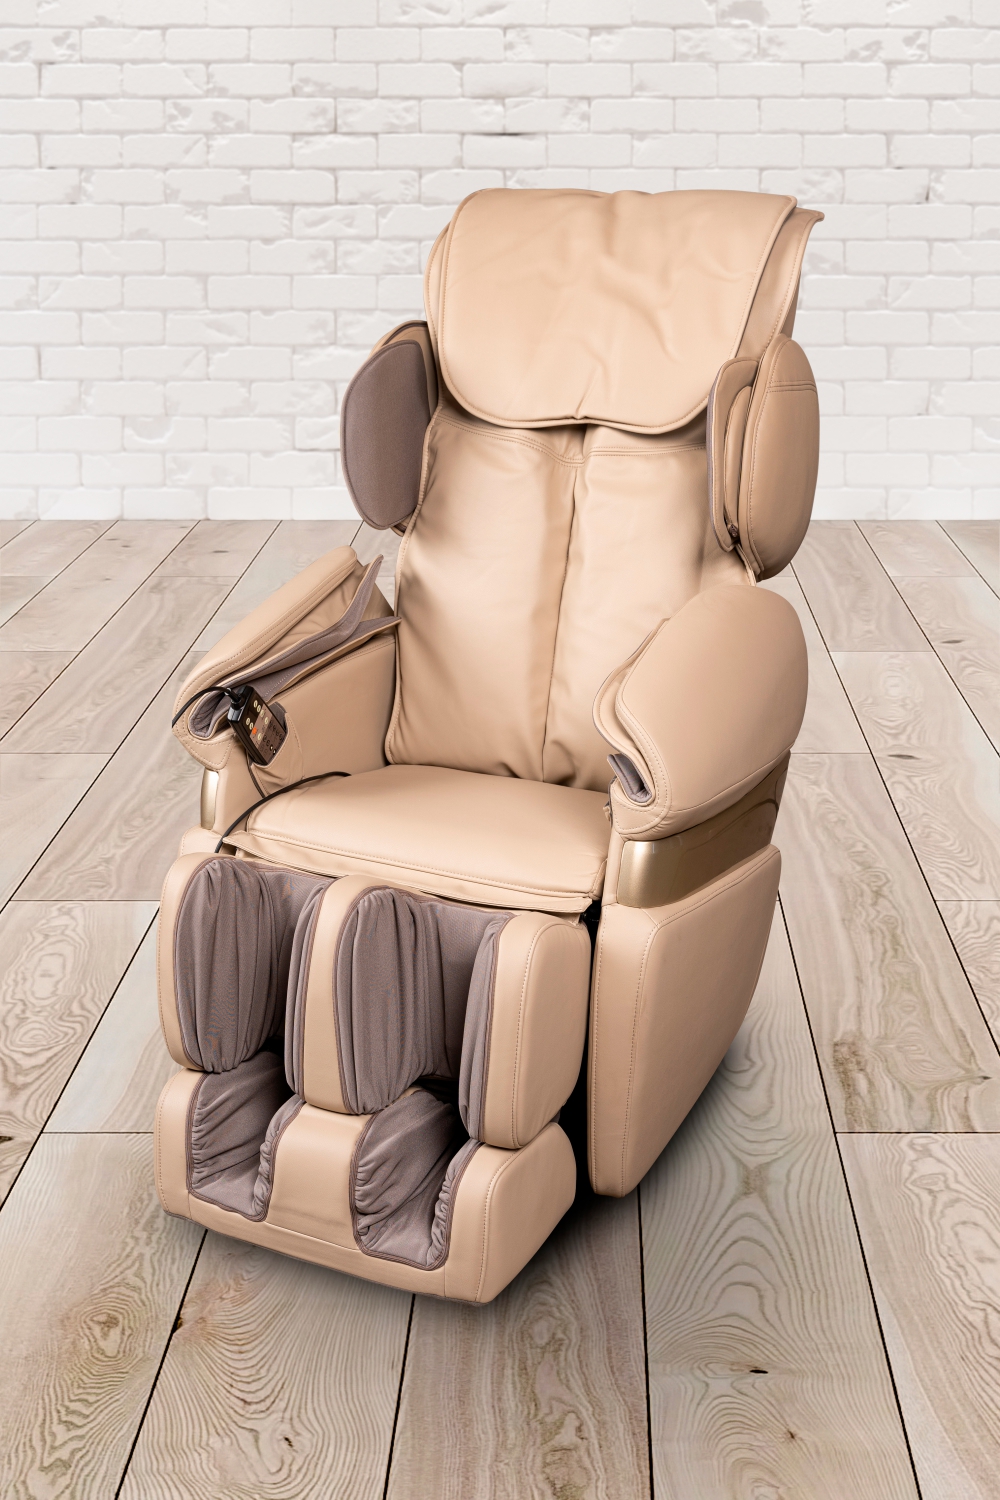 Rücken-Massagematte für Auto oder Sessel